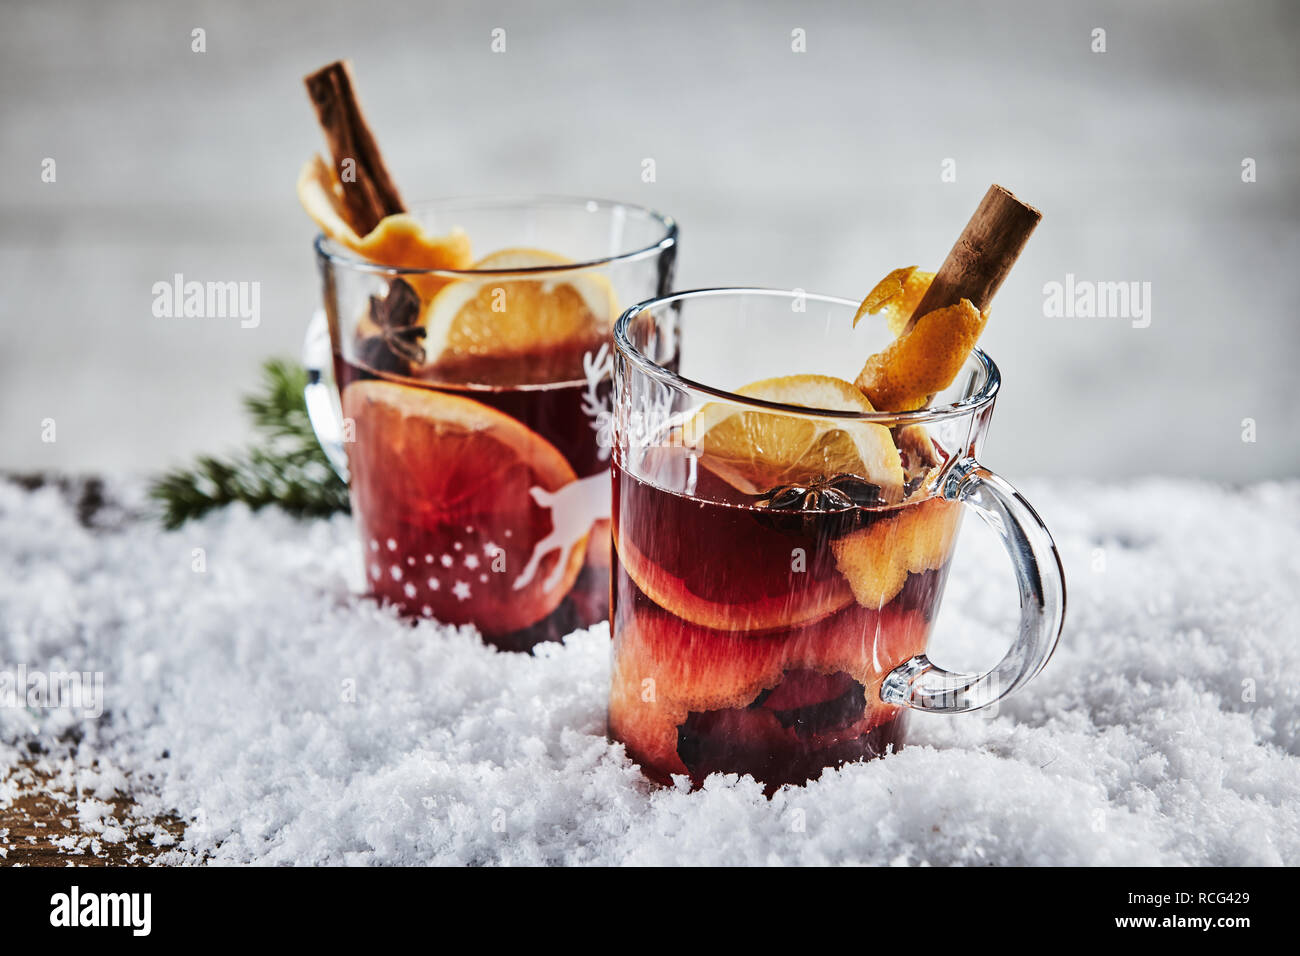 Traditionelle Hot würzigen Glühwein Glühwein oder Rotwein für Weihnachten mit Orangen, Zimt und Sternanis in zwei Glas Becher im Winter Schnee serviert. Stockfoto